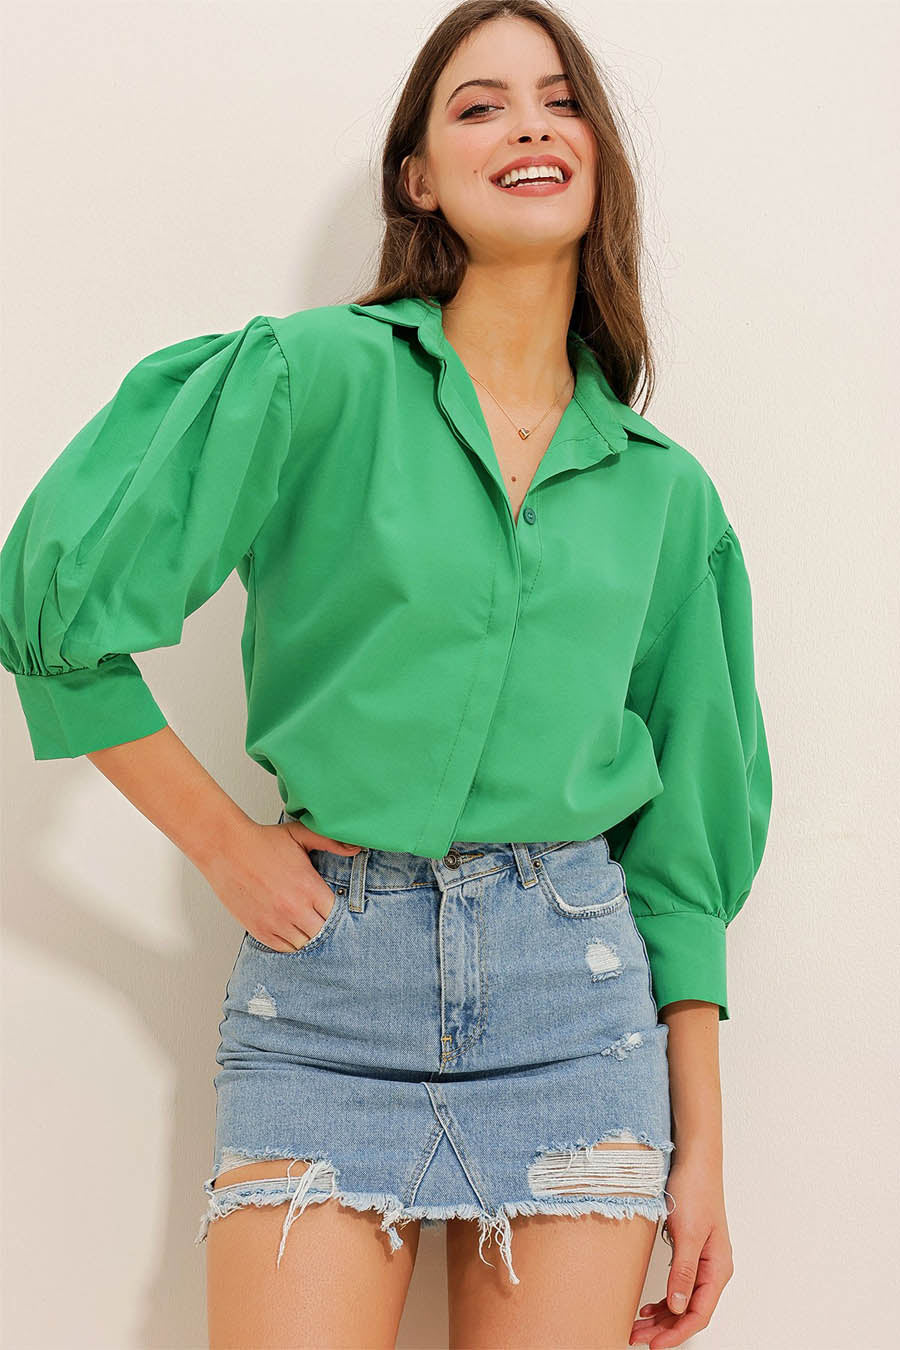 Γυναικείο πουκάμισο Maryam, Πράσινο 2